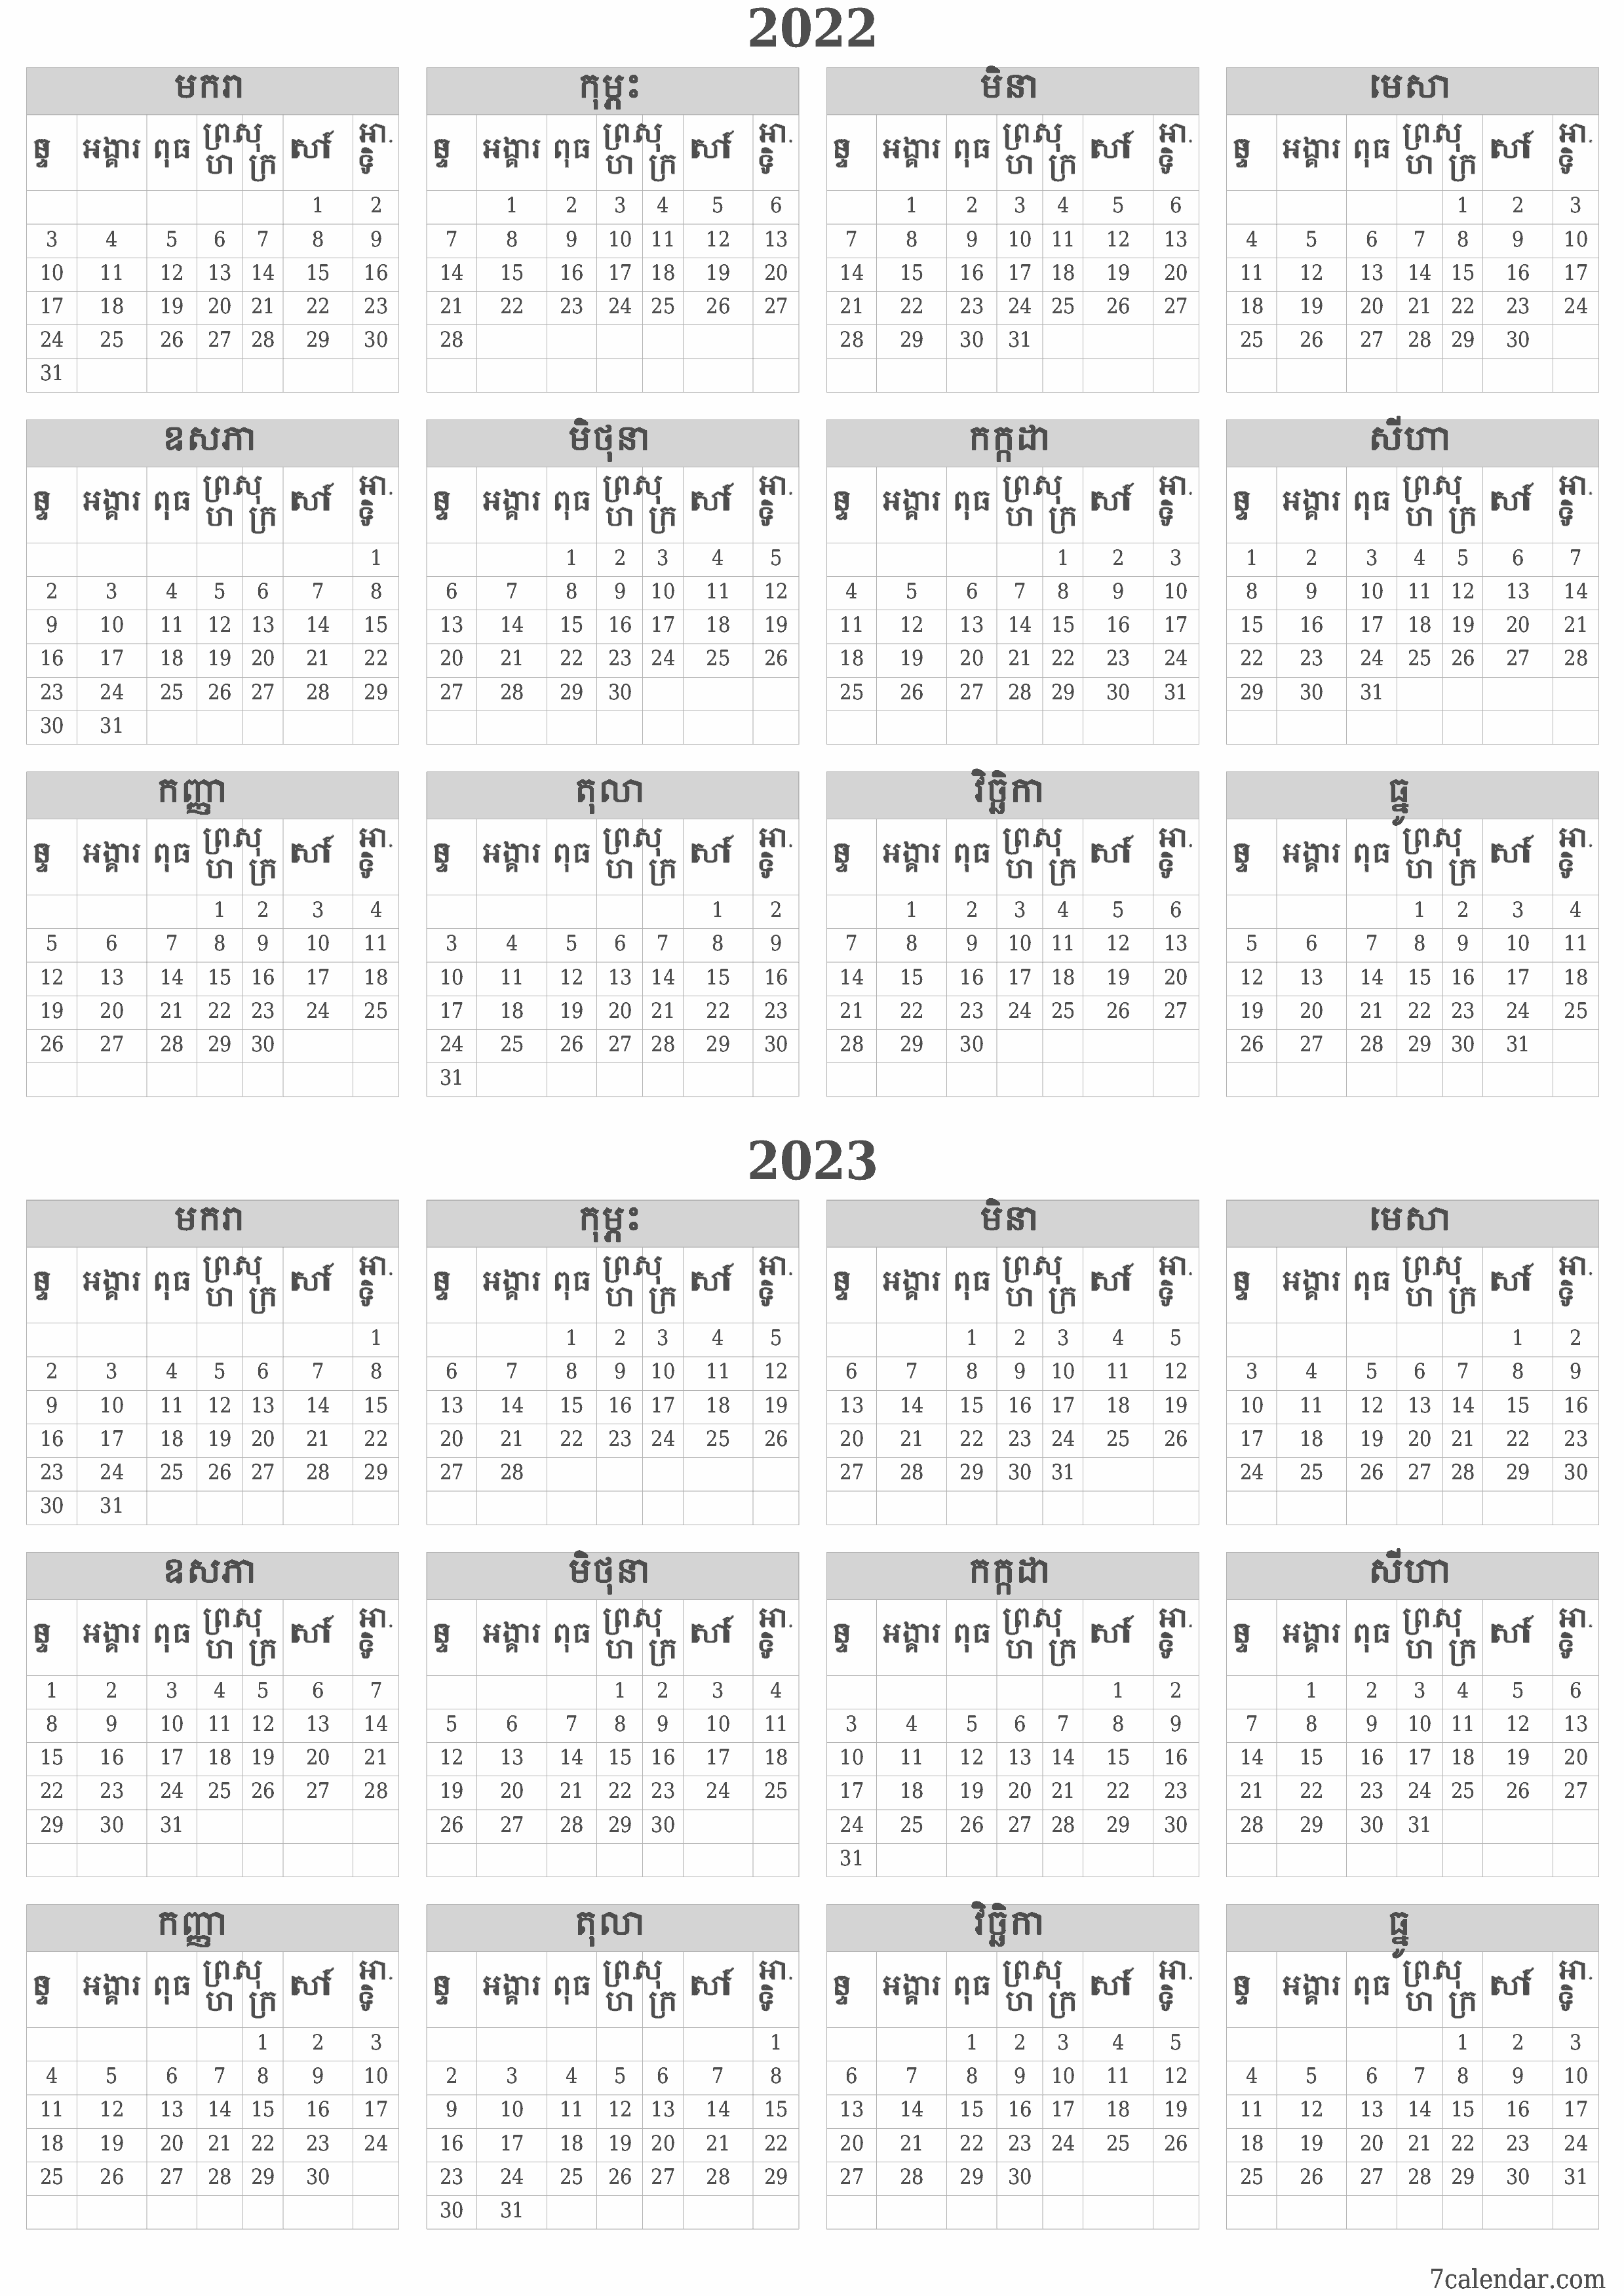 គំរូរូបភាពប្រតិទិន HD ប្រចាំខែទទេប្រចាំឆ្នាំសម្រាប់ឆ្នាំ 2022, 2023 រក្សាទុកនិងបោះពុម្ពជា PDF PNG Khmer - 7calendar.com